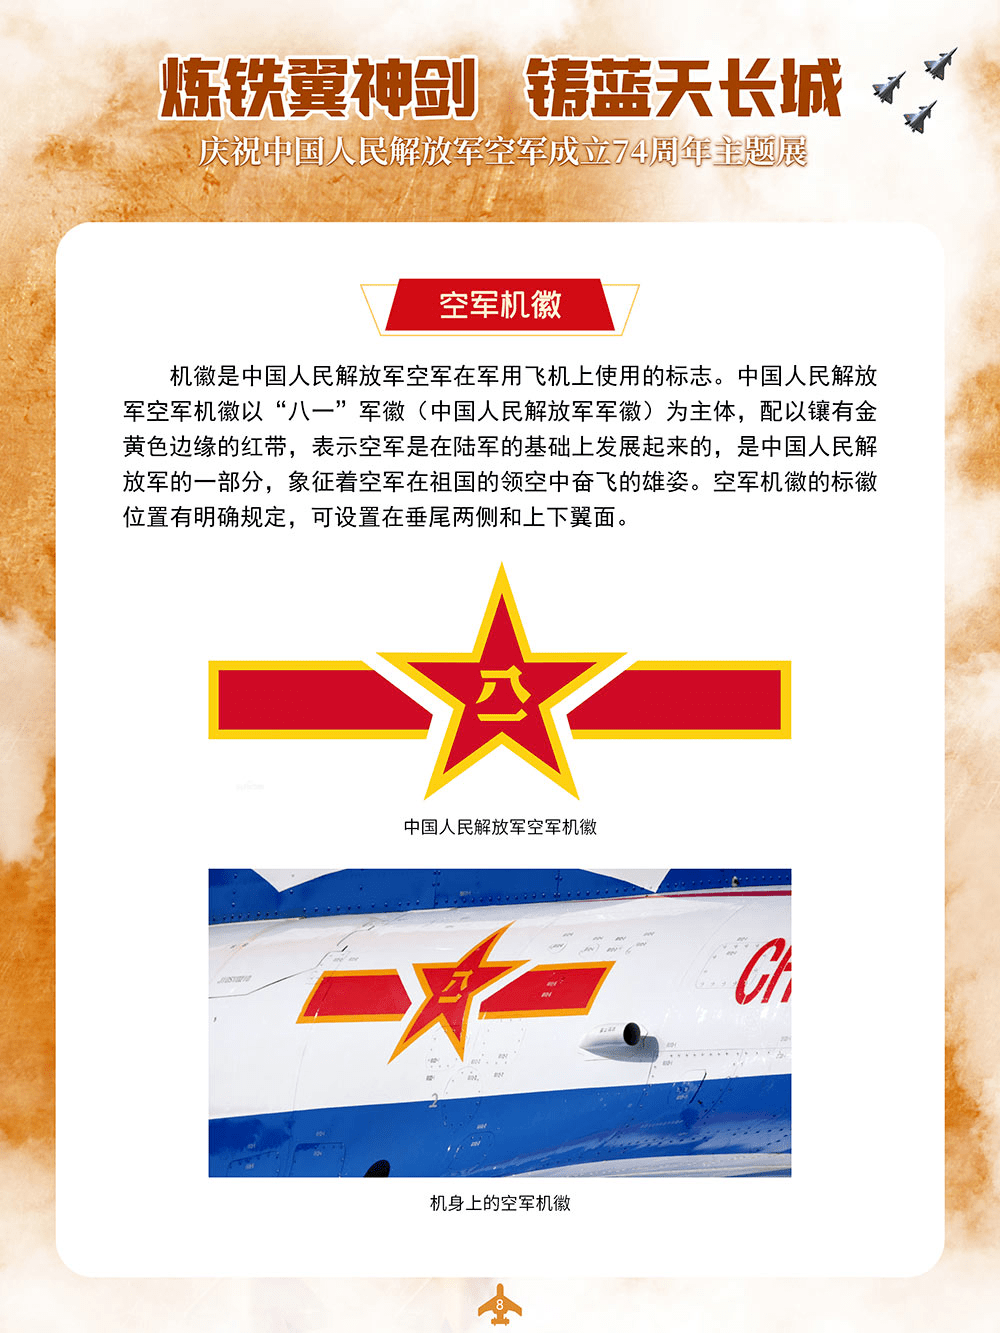 微信展丨庆祝中国人民解放军空军成立74周年主题展